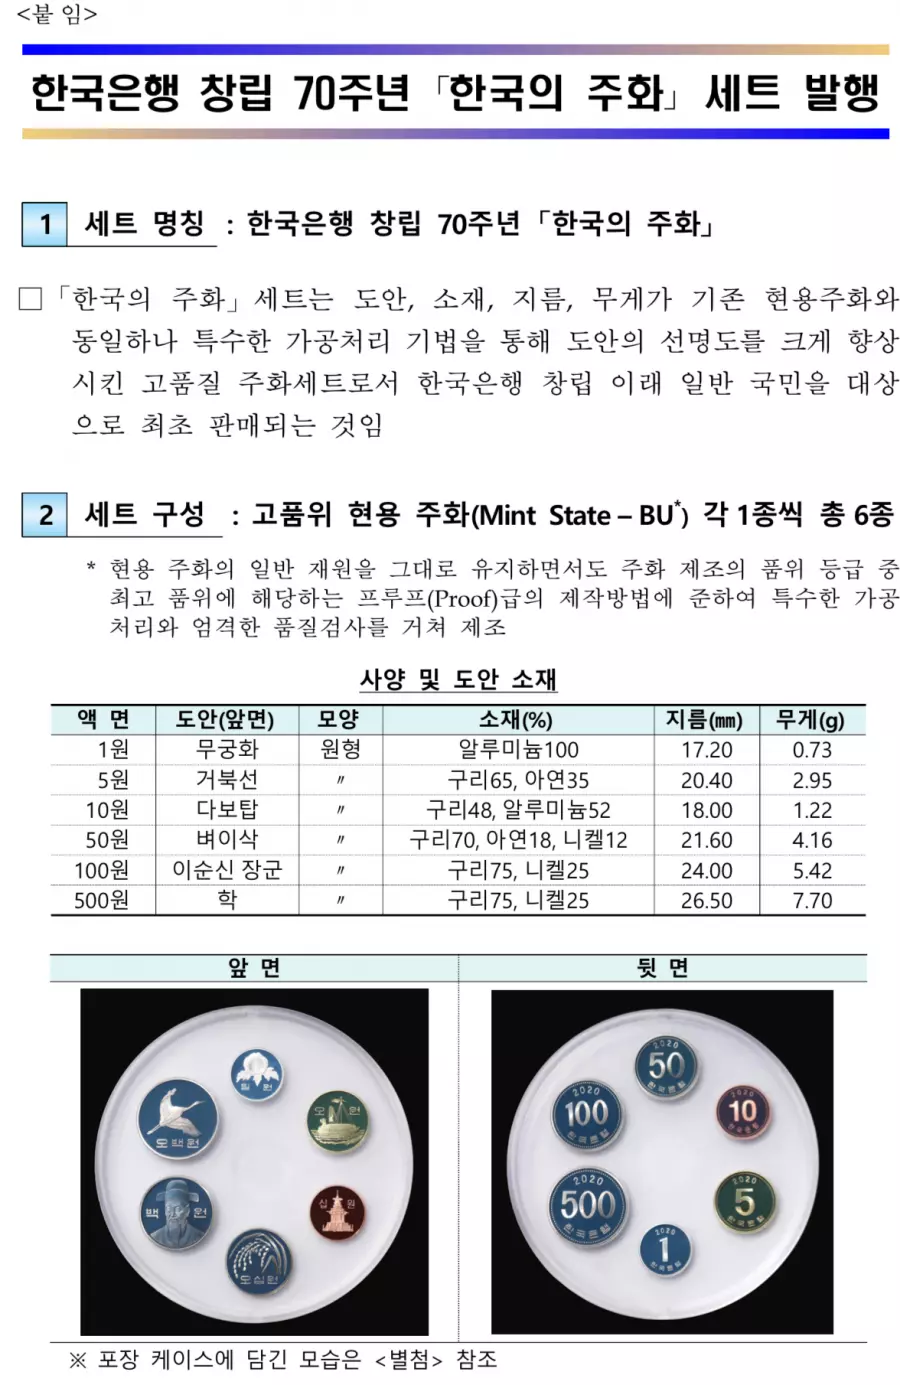 ' 한국은행 70주년 기념 주화 판매처 가격 판매기간2